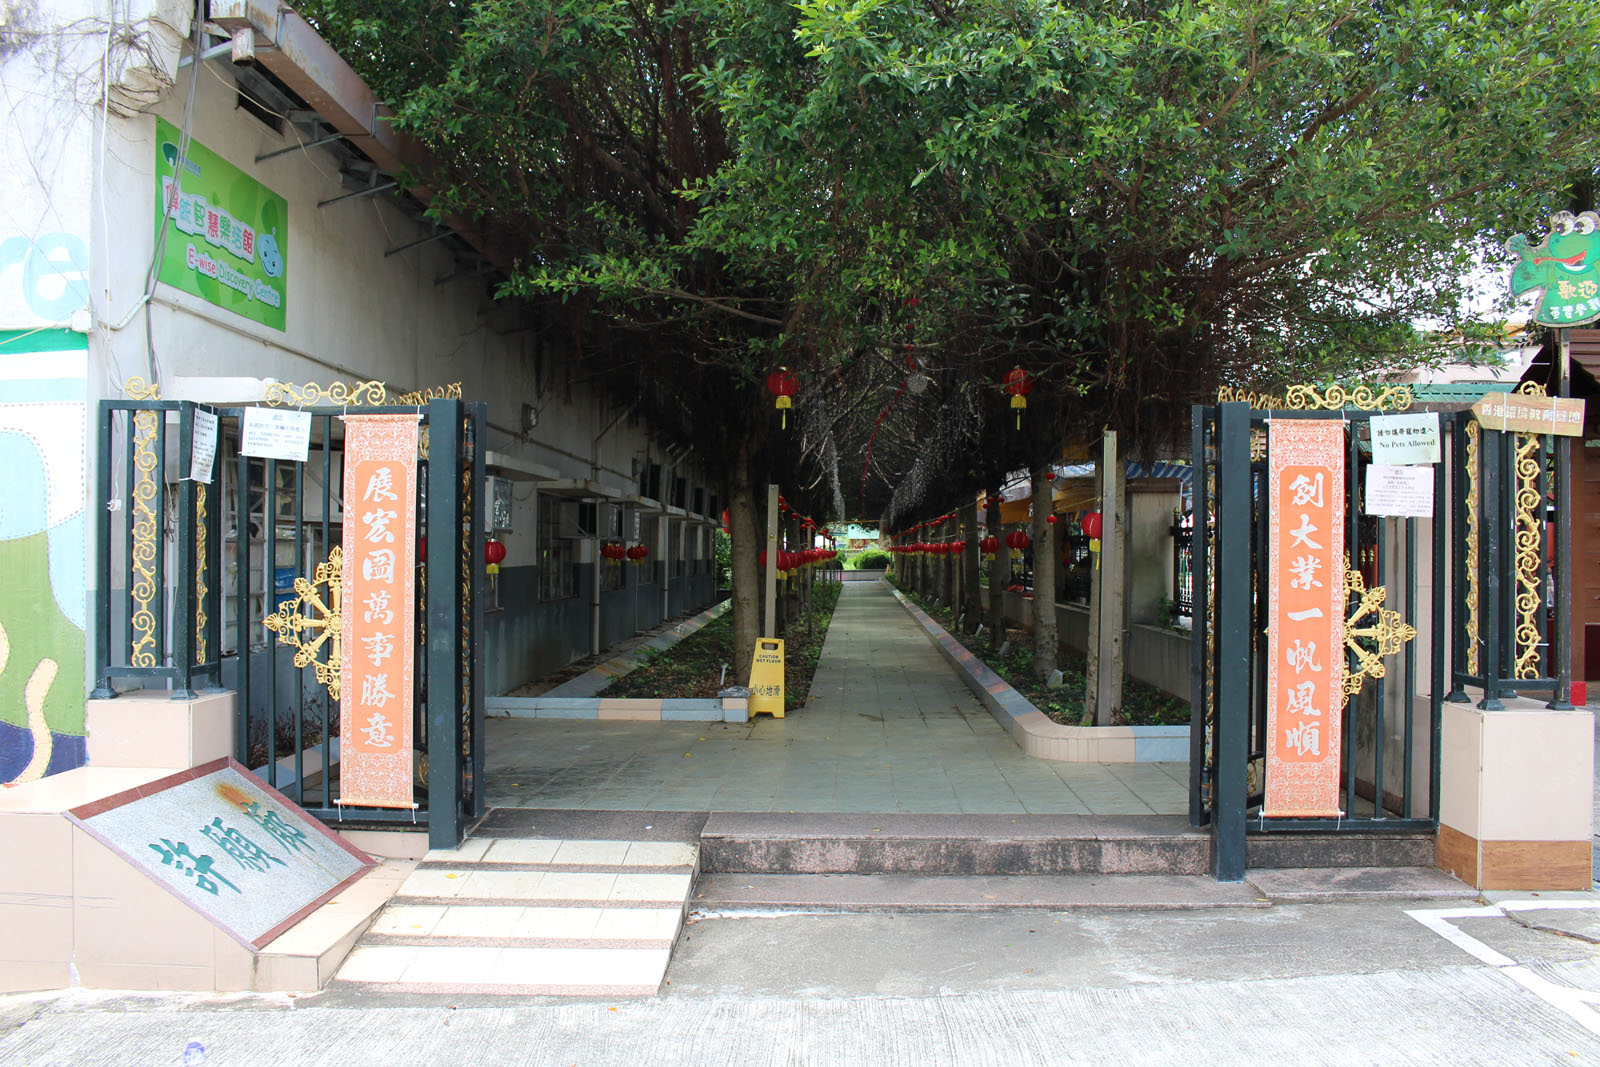 相片 1: 林村許願廣場(包括許願樹)及十二生肖廣場